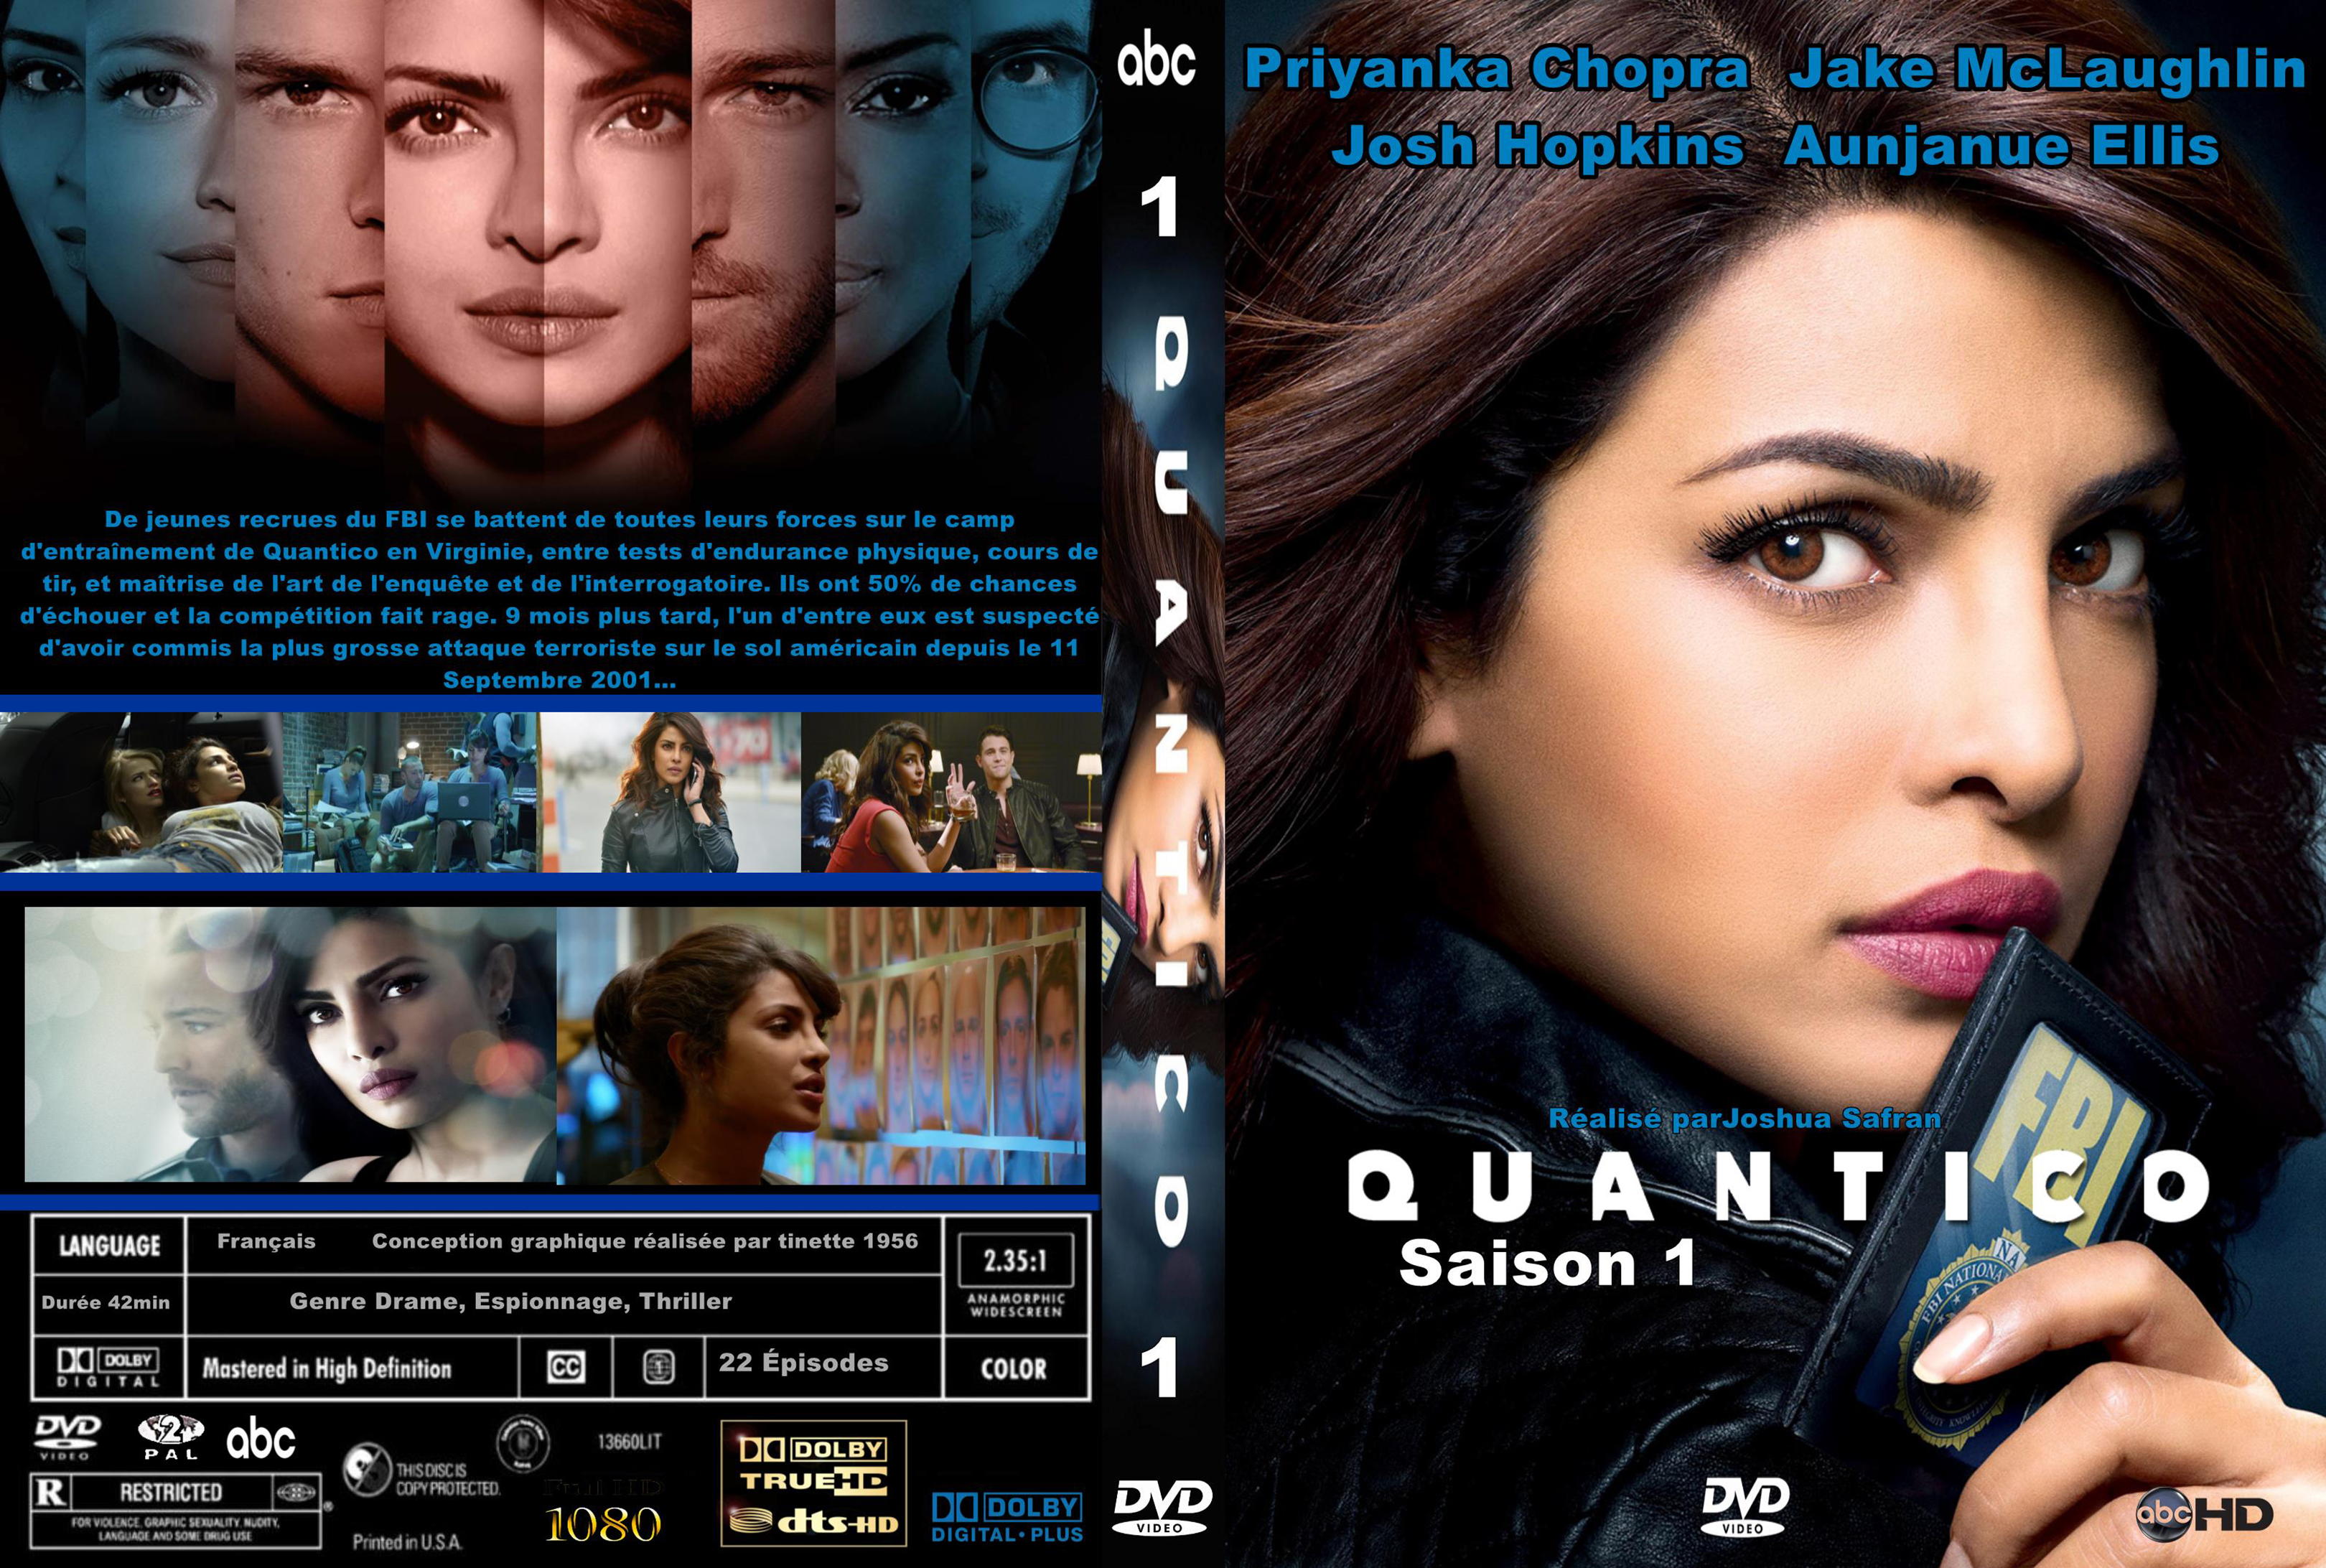 Jaquette DVD Quantico saison 1 custom